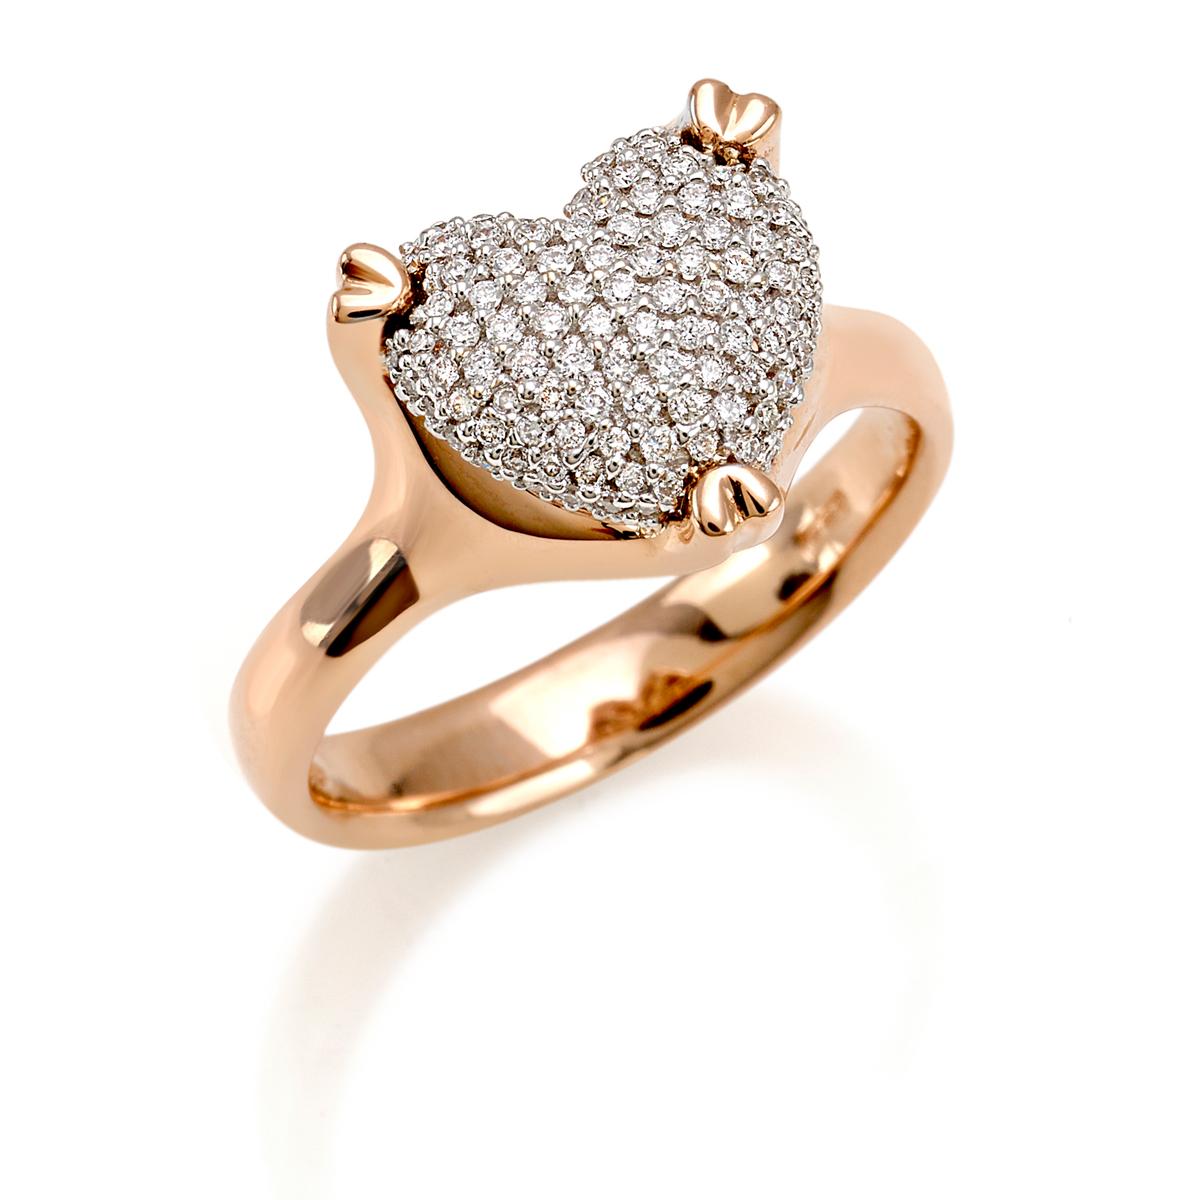 Anello in oro 18 kt cuore con pavé di diamanti - AD653